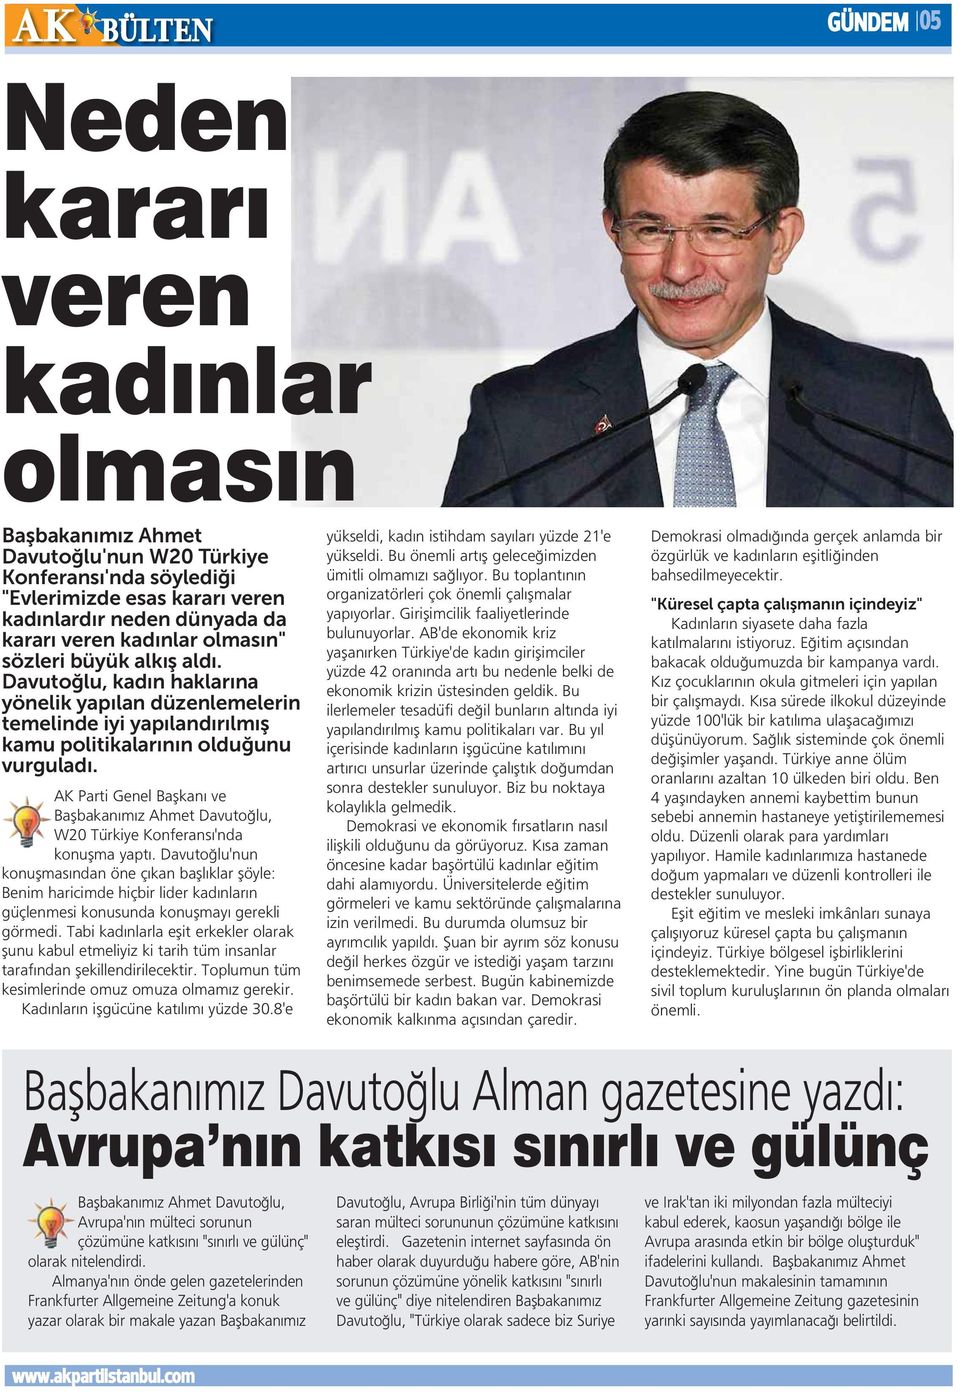 AK Parti Genel Başkanı ve Başbakanımız Ahmet Davutoğlu, W20 Türkiye Konferansı'nda konuşma yaptı.